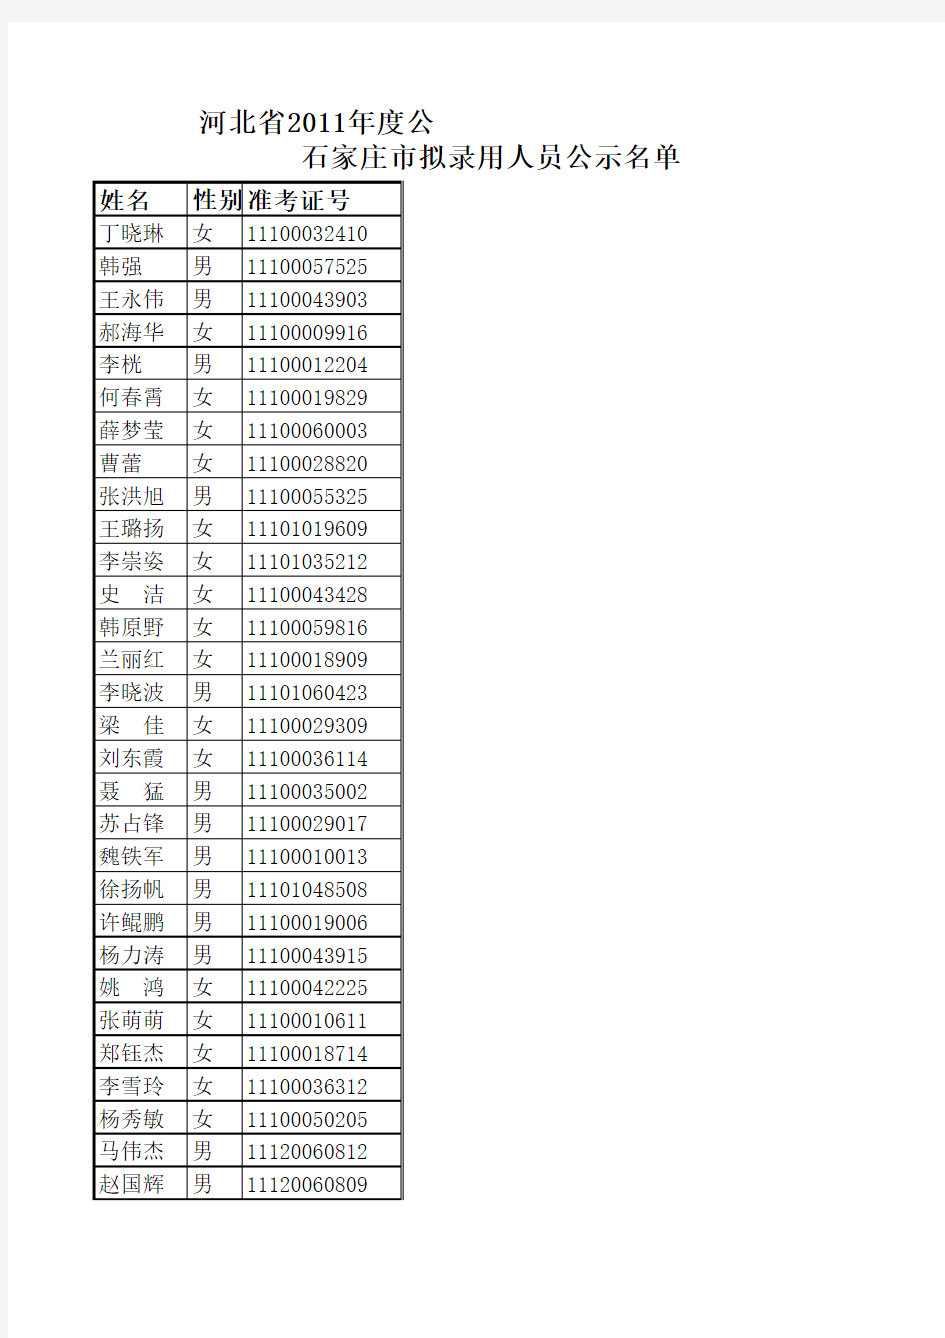 2011河北省公务员考试录用名单